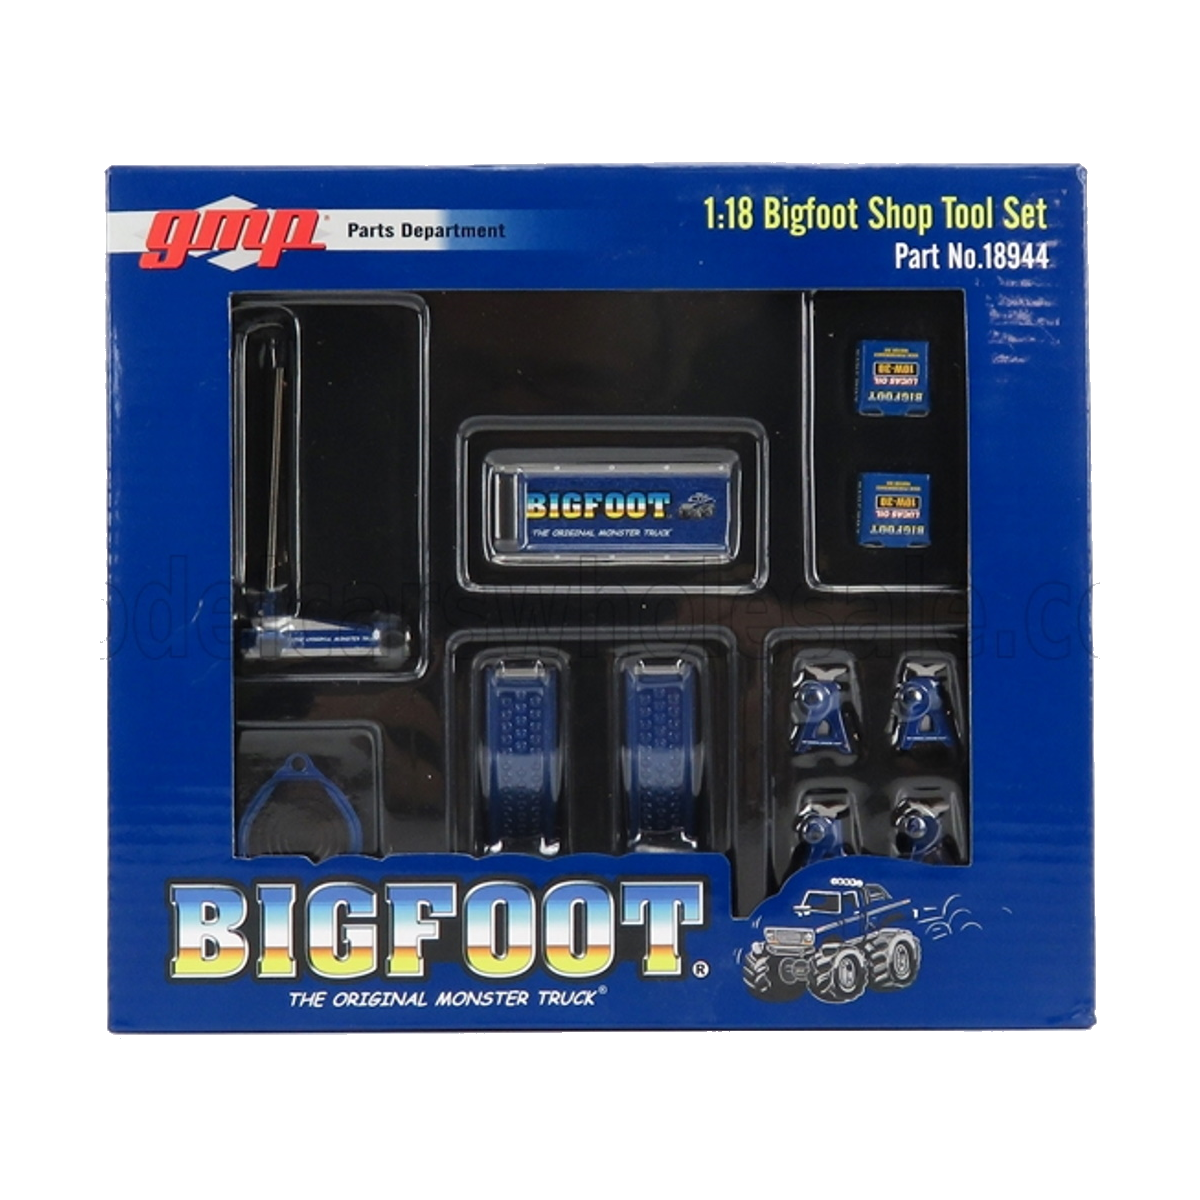 Garage Tool set: Bigfoot Monster